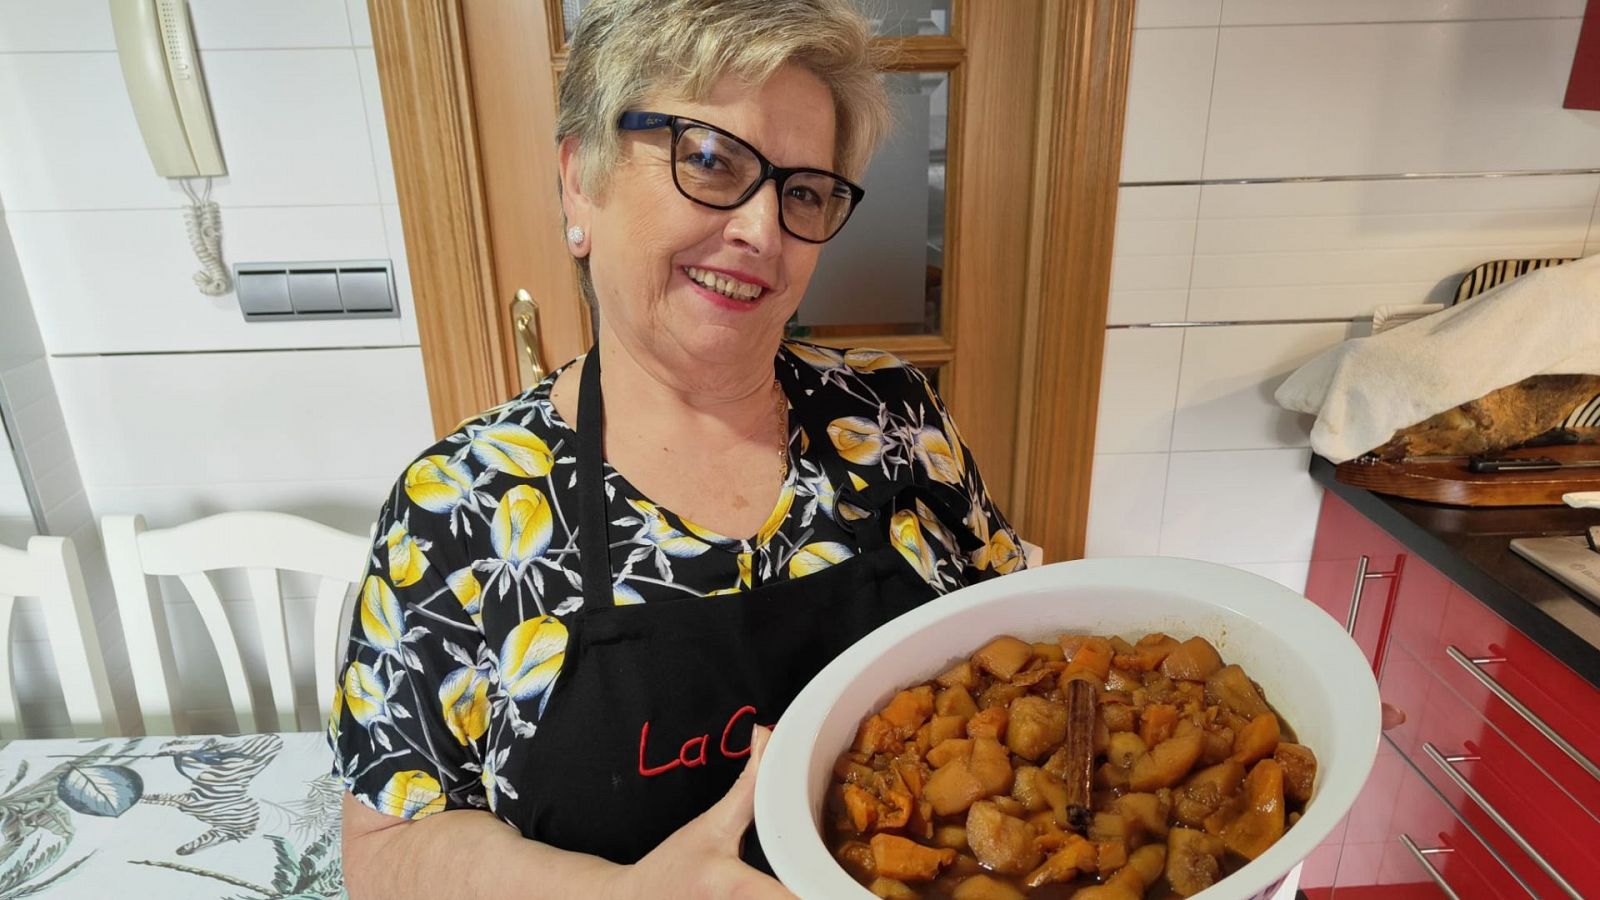 La cocina de Adora: receta para hacer un dulce de membrillo con boniato delicioso - Ver ahora